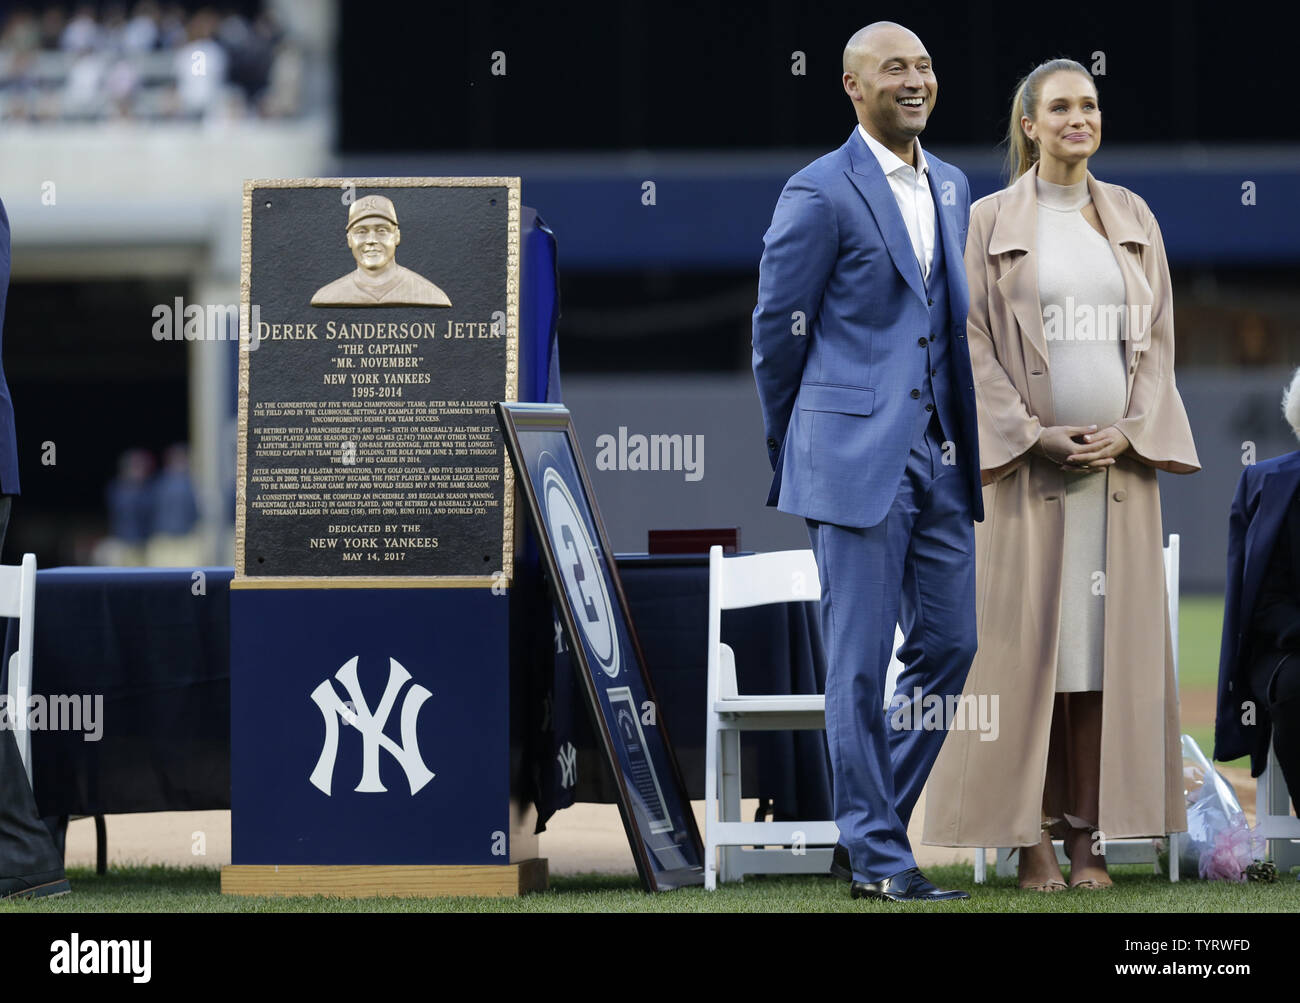 Derek Jeter's No. 2 retired: See all New York Yankees retired